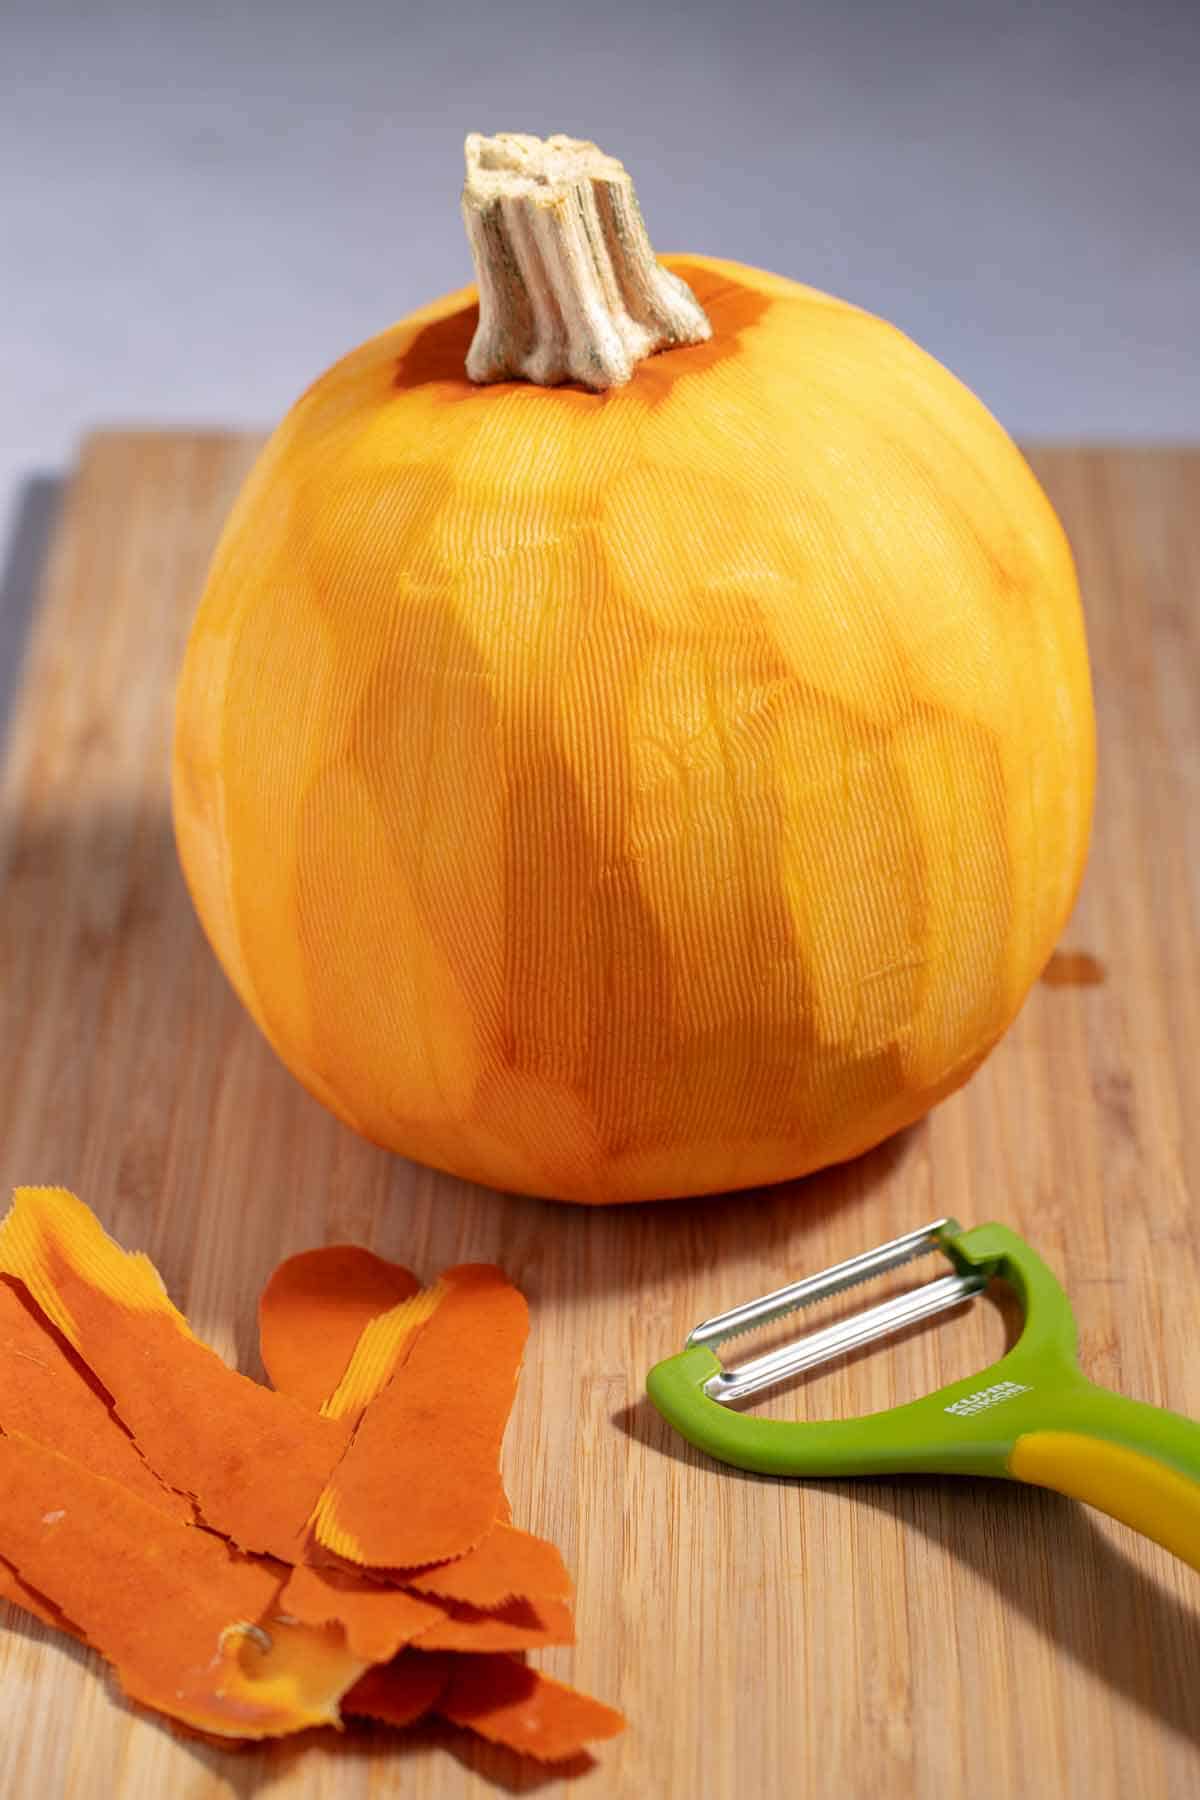 Whole, raw, peeled pumpkin.